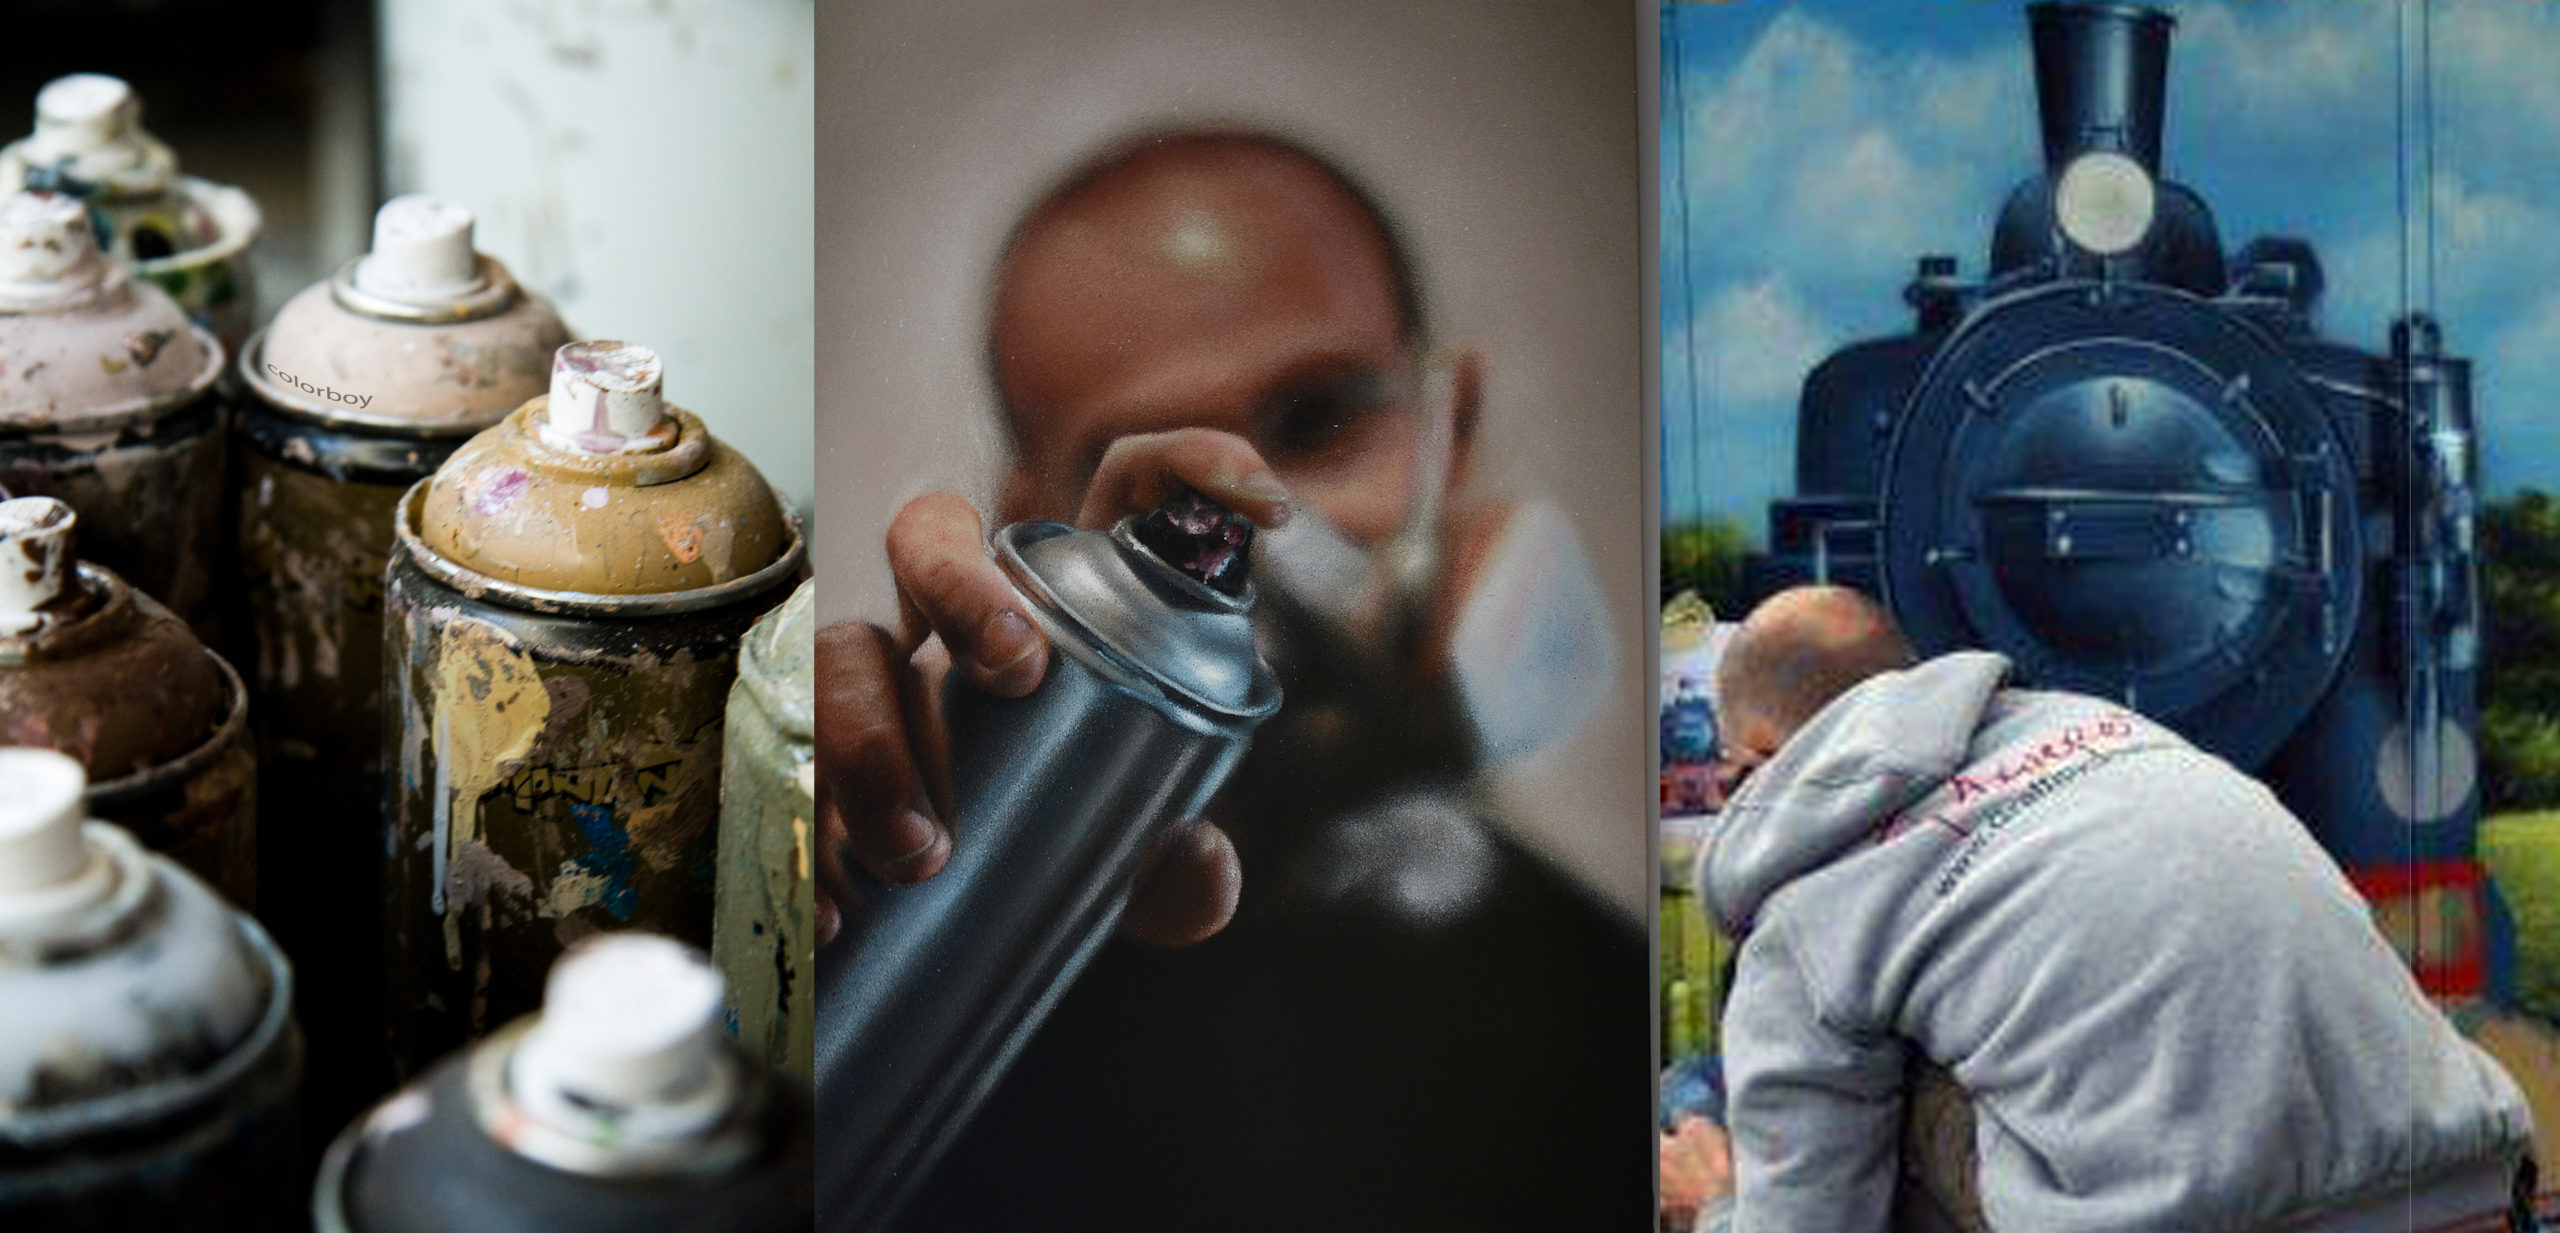 graffitikünstler bei der arbeiten dazu sprüdosen Nahaufnahme und Selbstporträt des graffitikünstlers